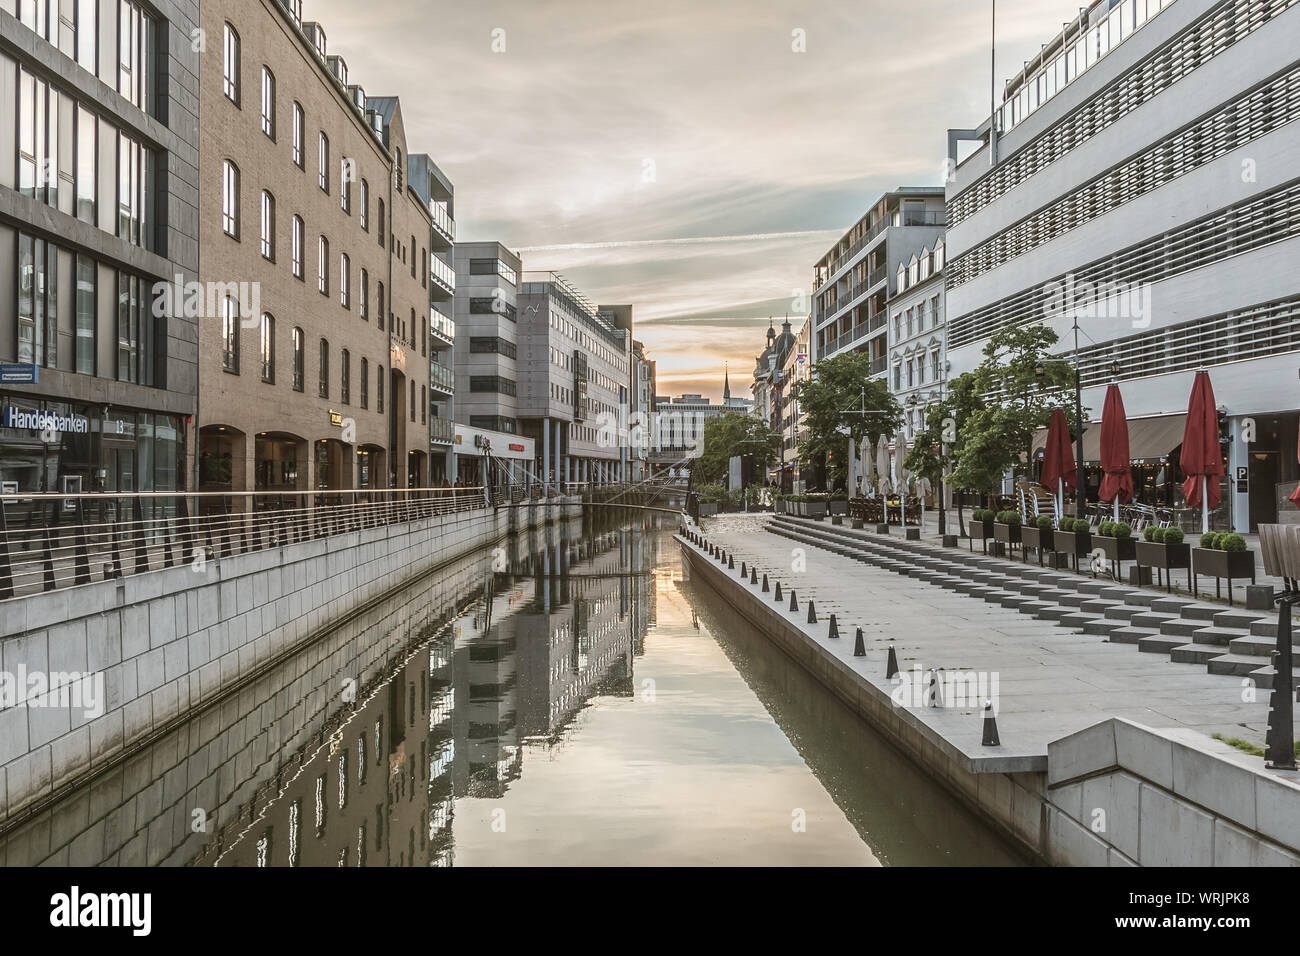 Åboulevarden im Herzen von Århus, graue Häuser im Wasser, Dänemark, 15. Juli 2019, Stockfoto